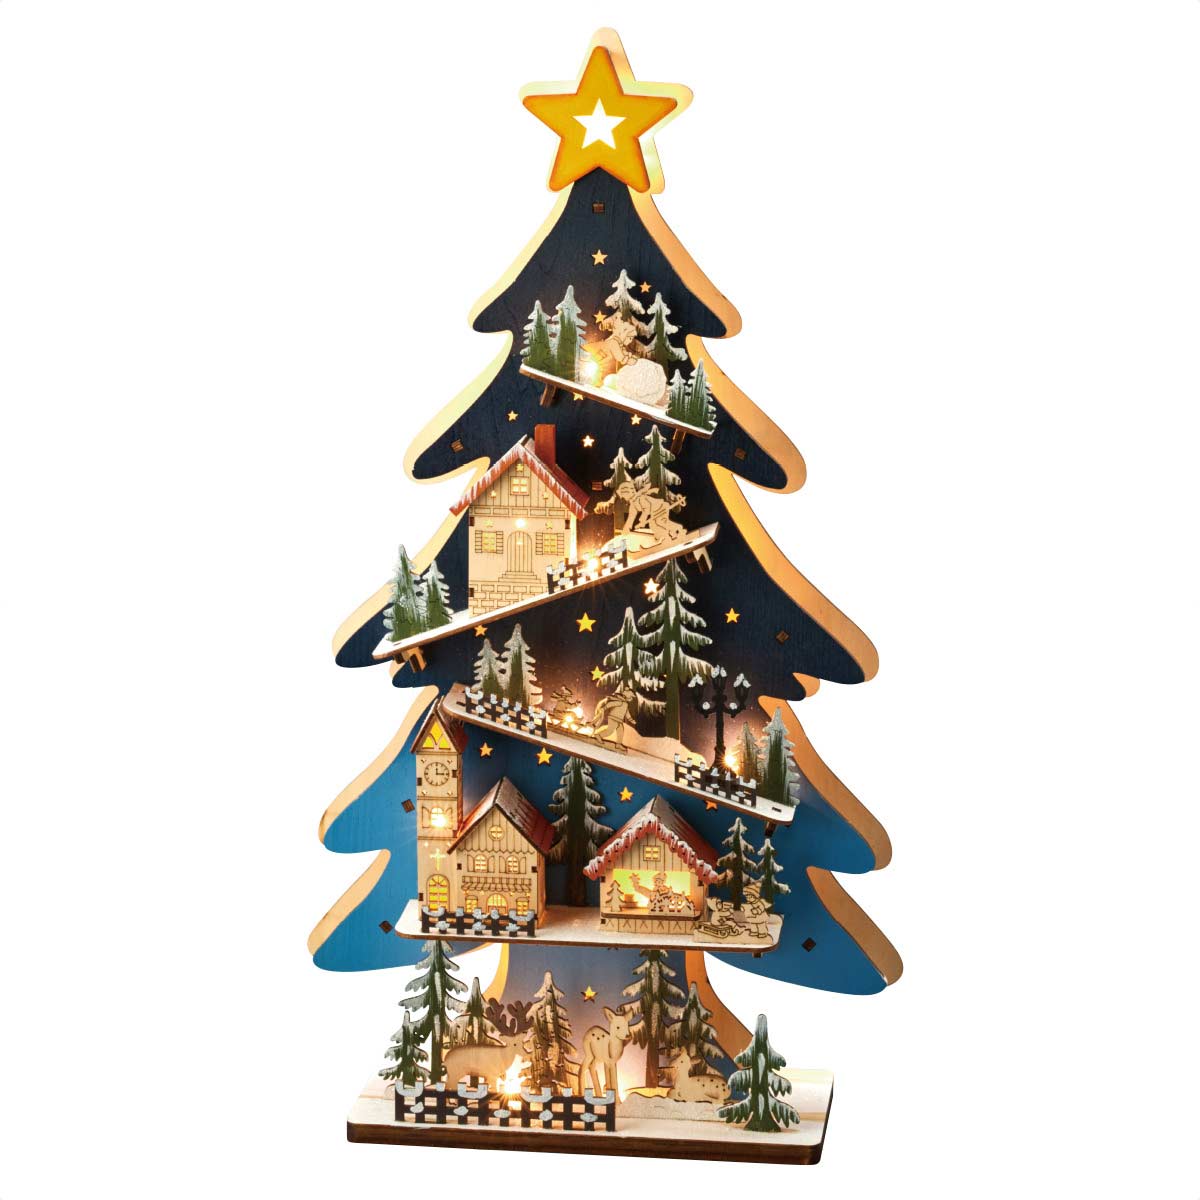 60cm Ledクリスマスツリーウッドスタンド 卓上おしゃれ雑貨 クリスマス飾り通販 ストエキ